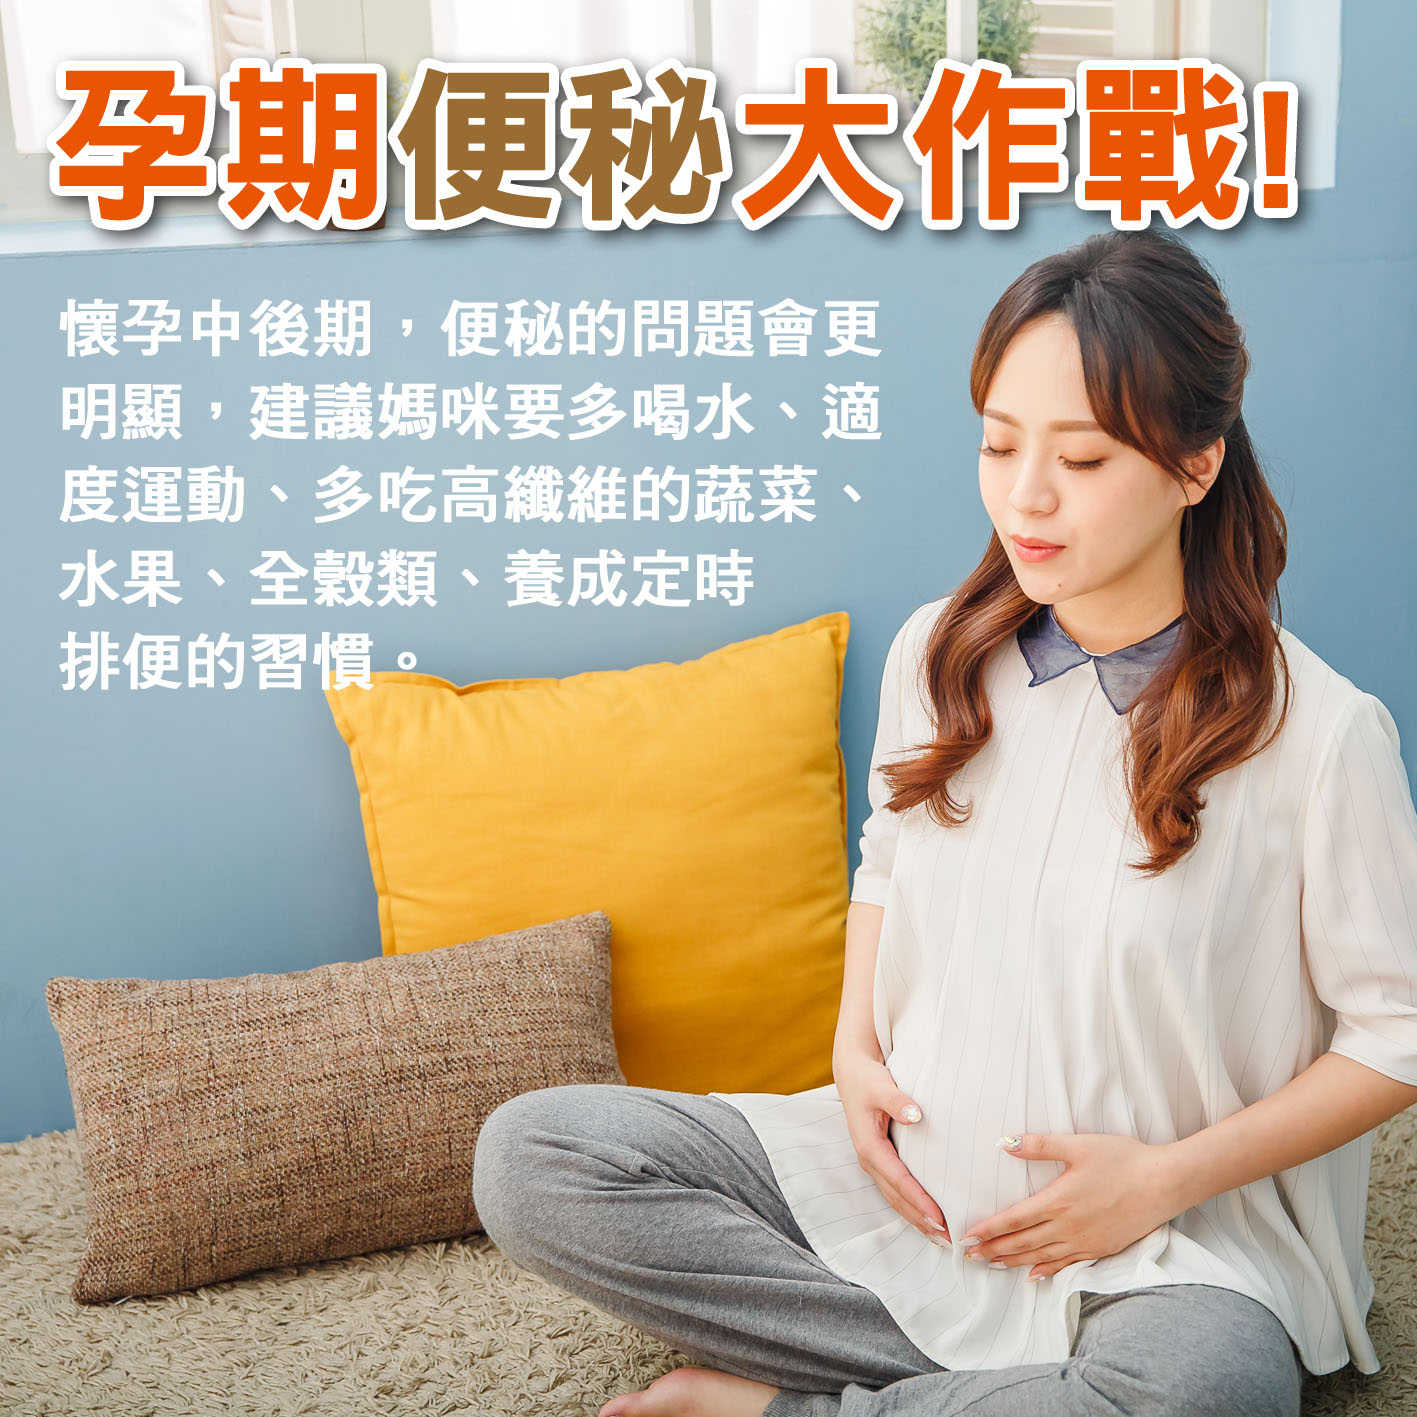 懷孕第19週: 孕期便秘大作戰!